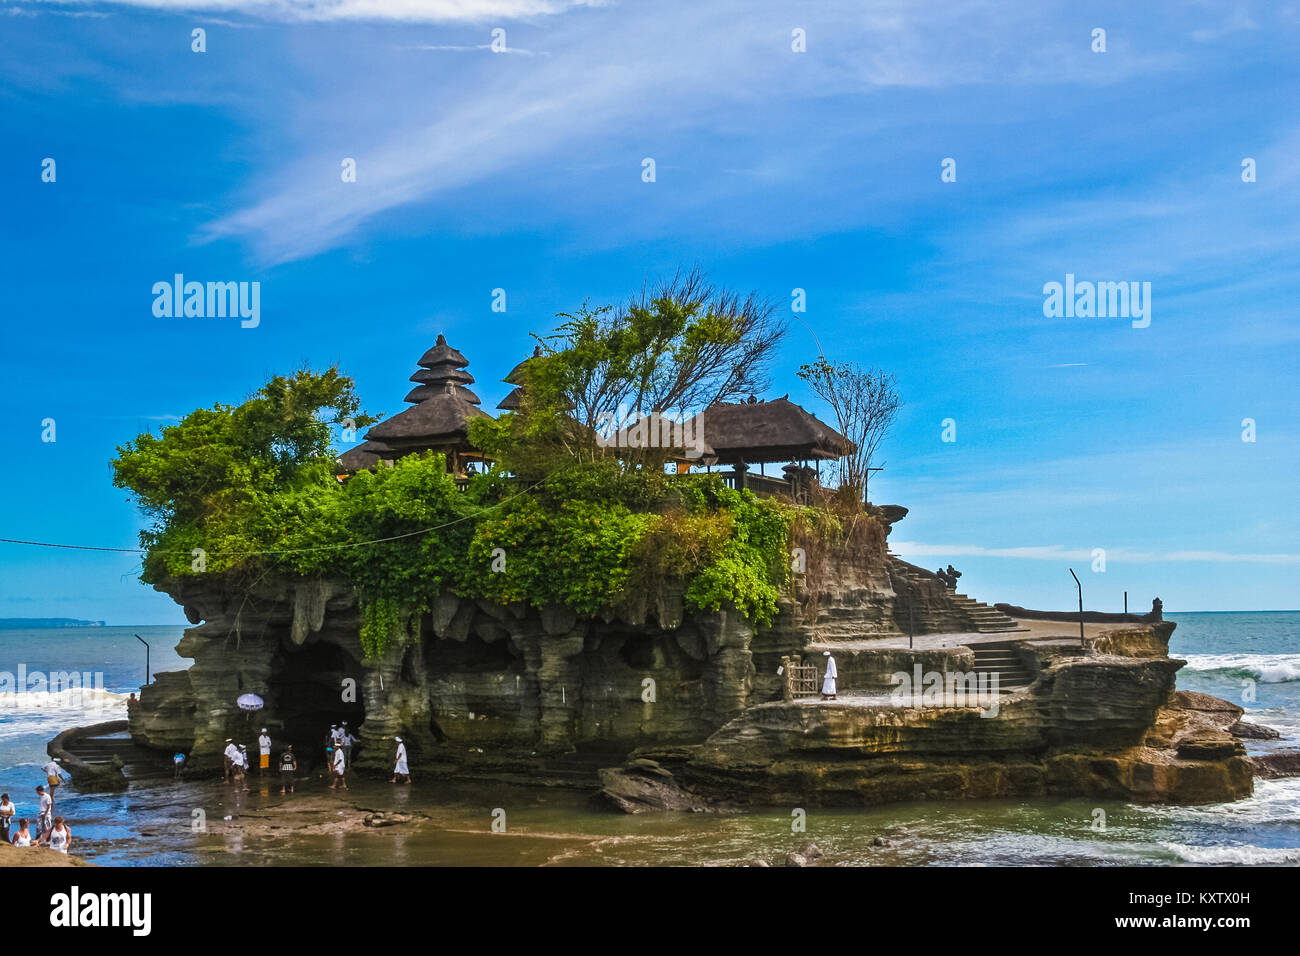 Vue complète de Pura Tanah Lot, un ancien temple pèlerinage hindou sur une formation rocheuse au large de l'île indonésienne de Bali. Banque D'Images